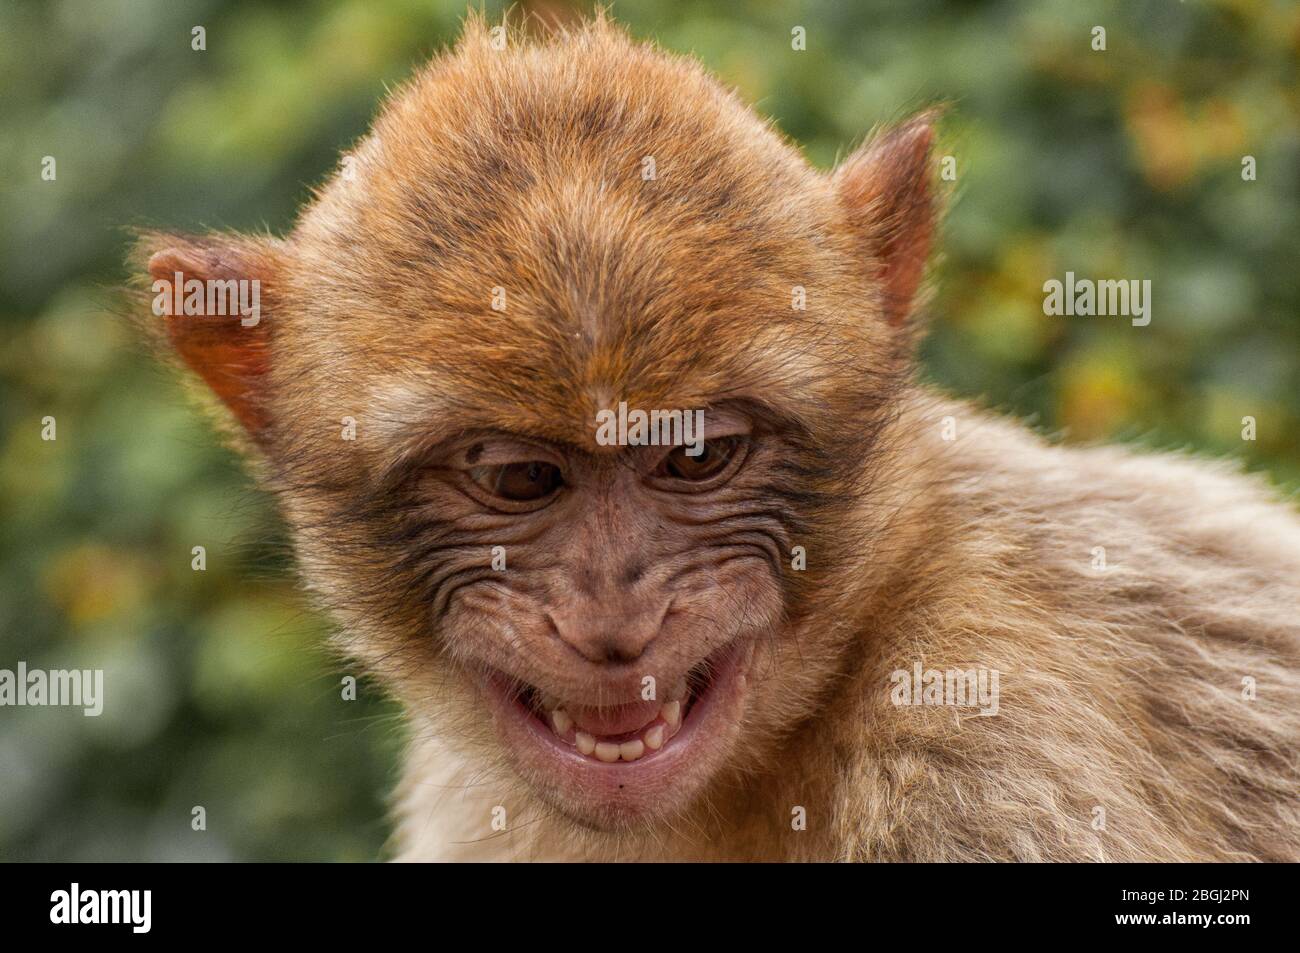 Gros plan de la tête d'une macaque de Barbarie Banque D'Images